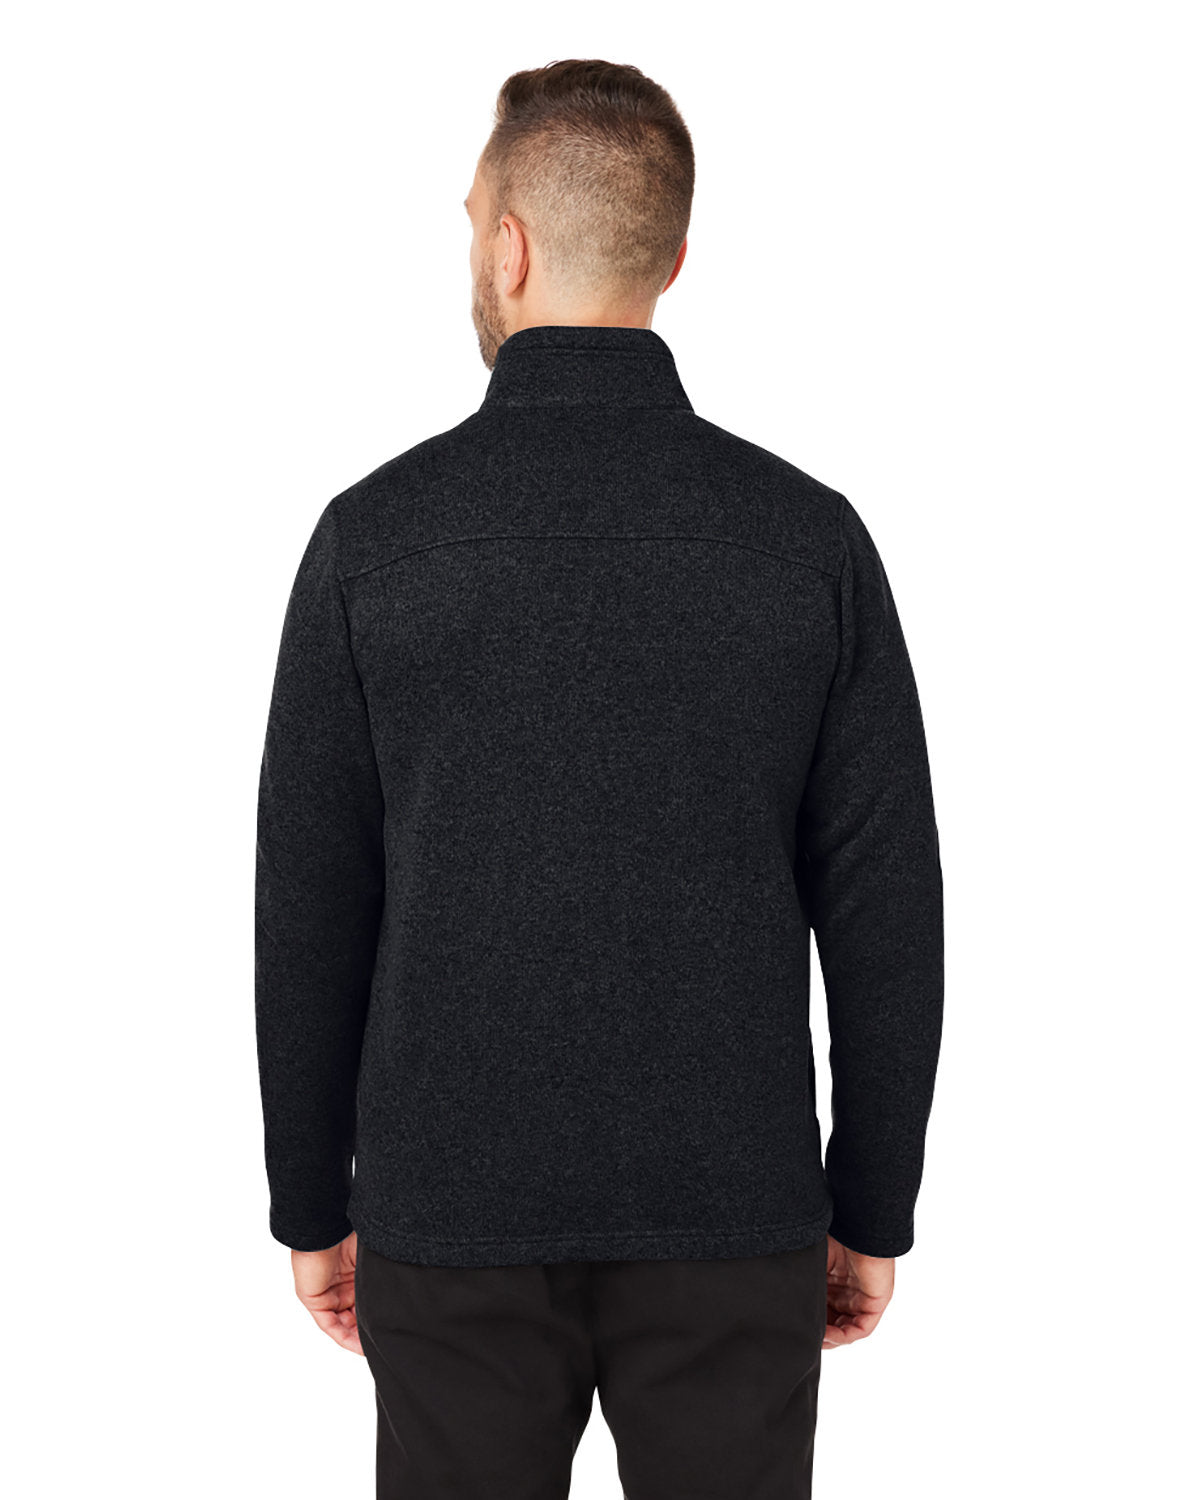 Marmot Men's Dropline Sweater Fleece Jackets, Black